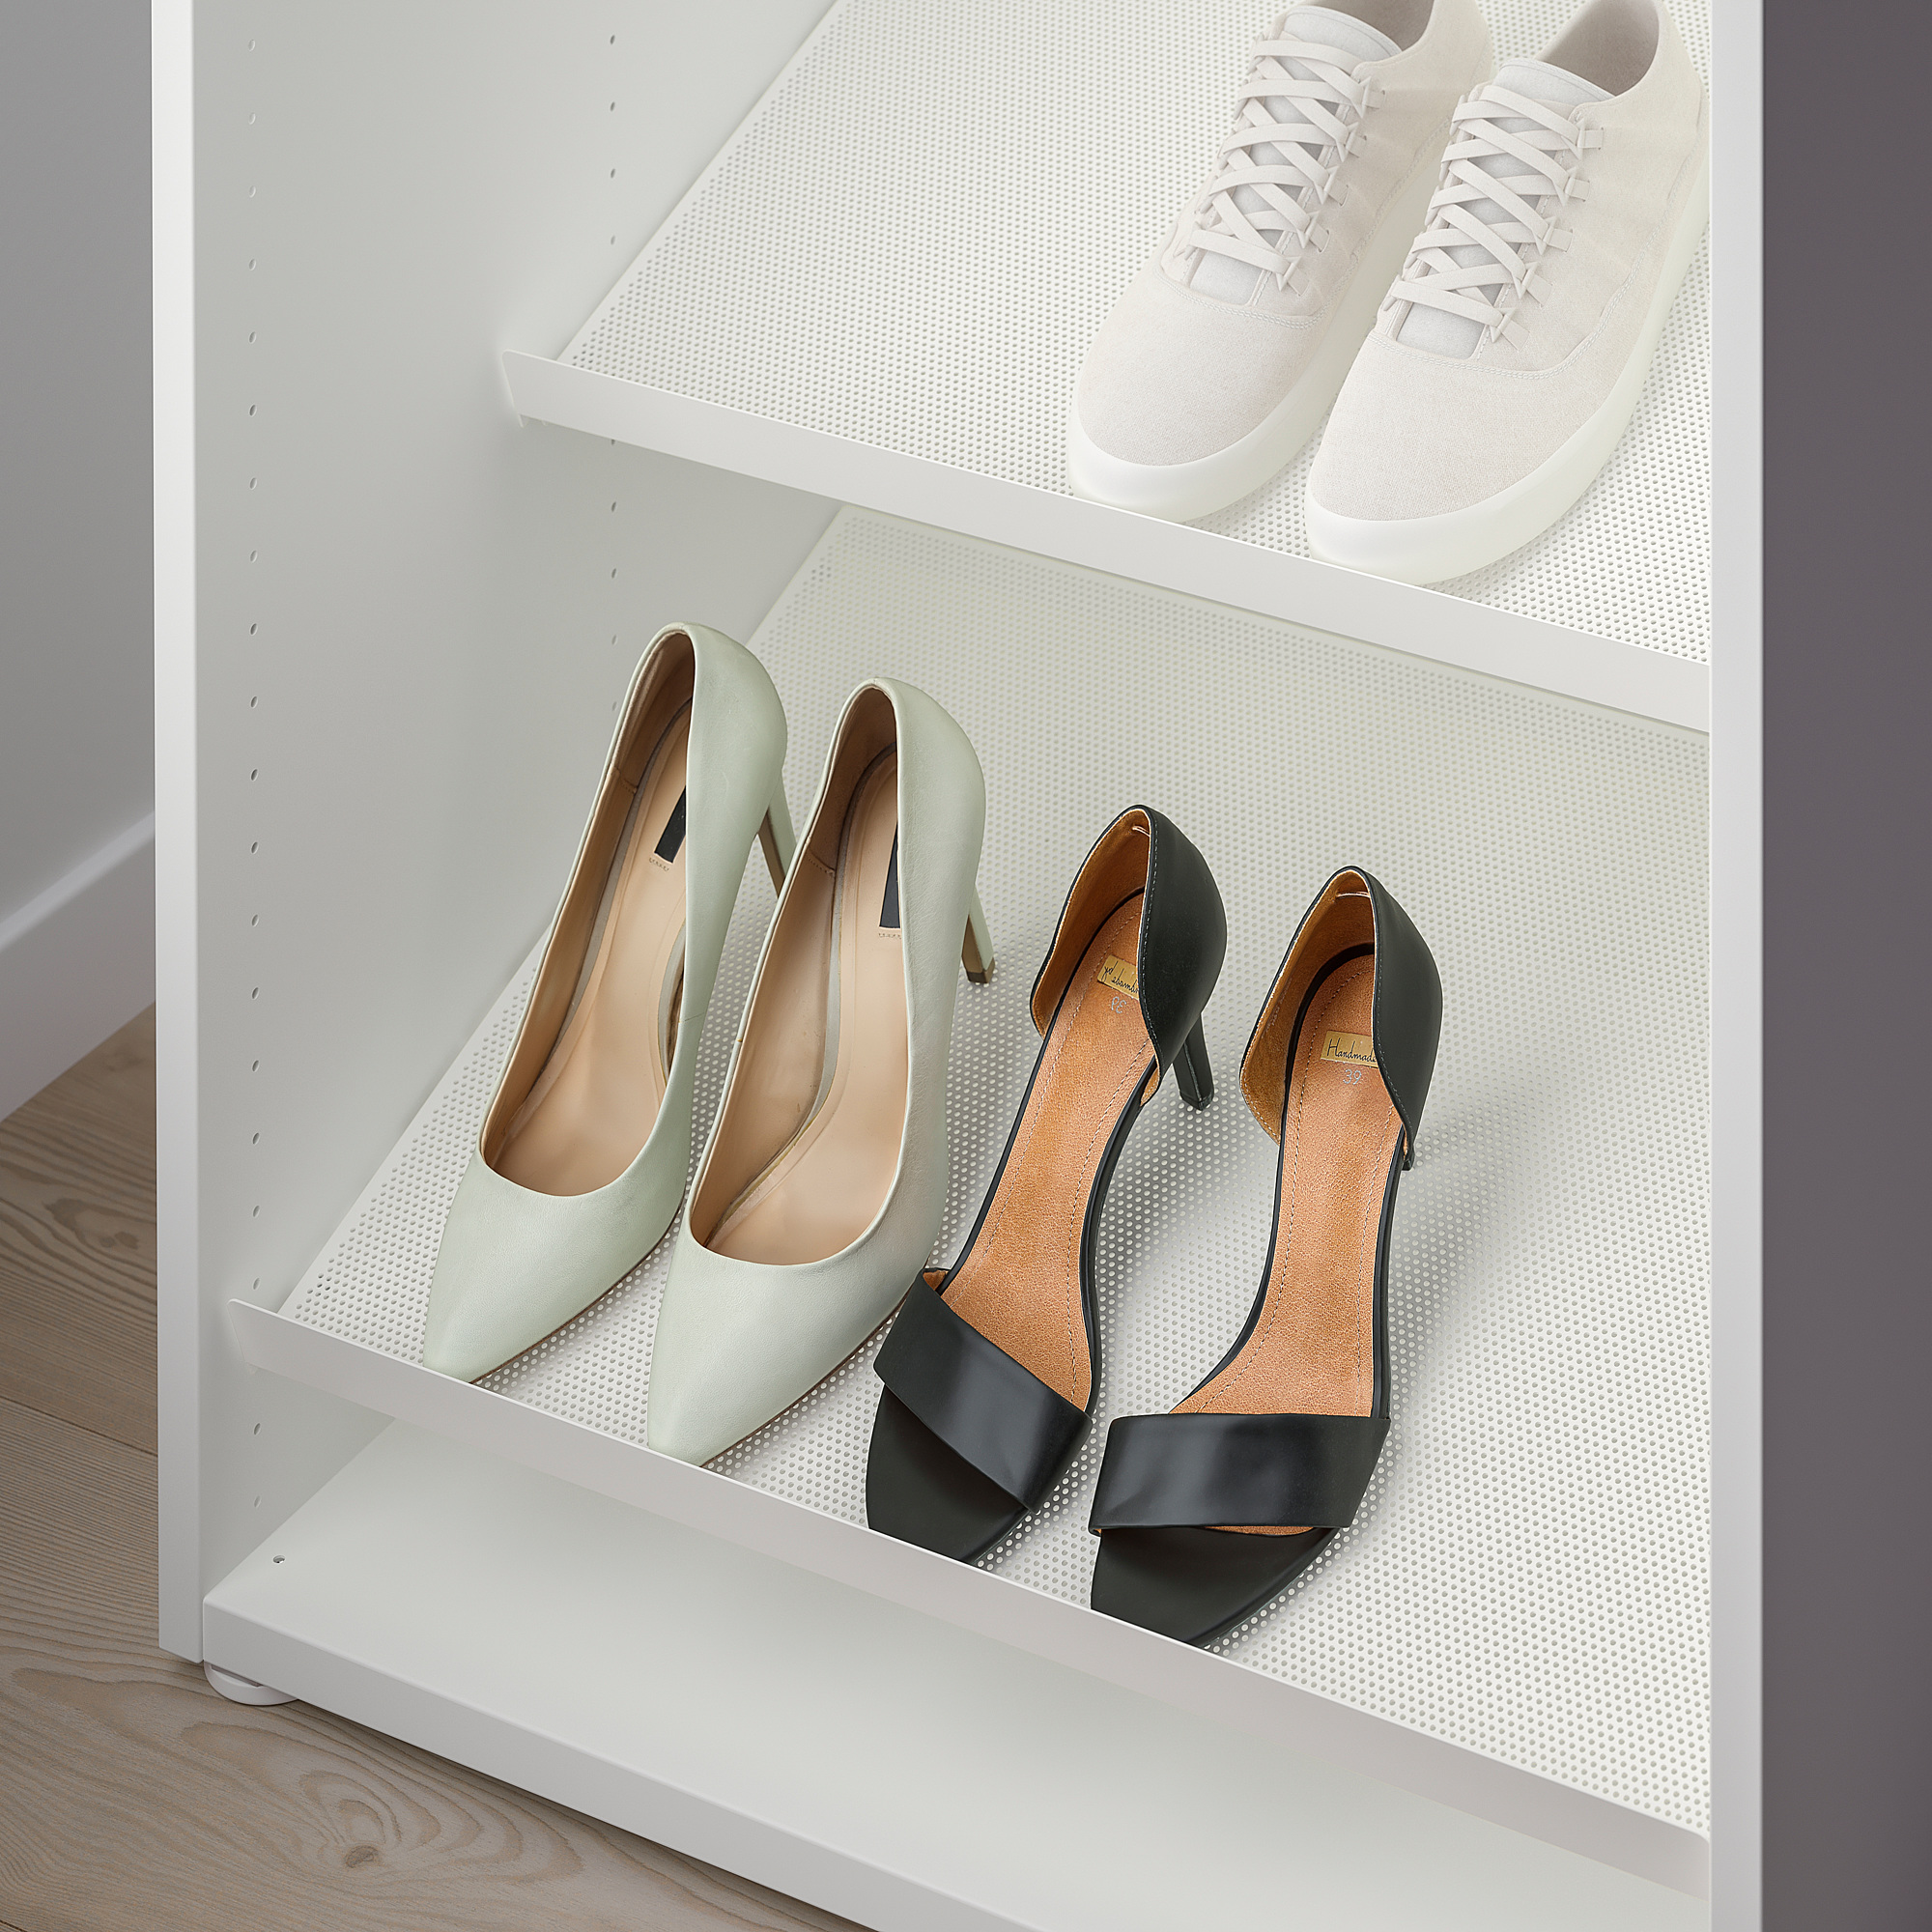 HJÄLPA shoe shelf